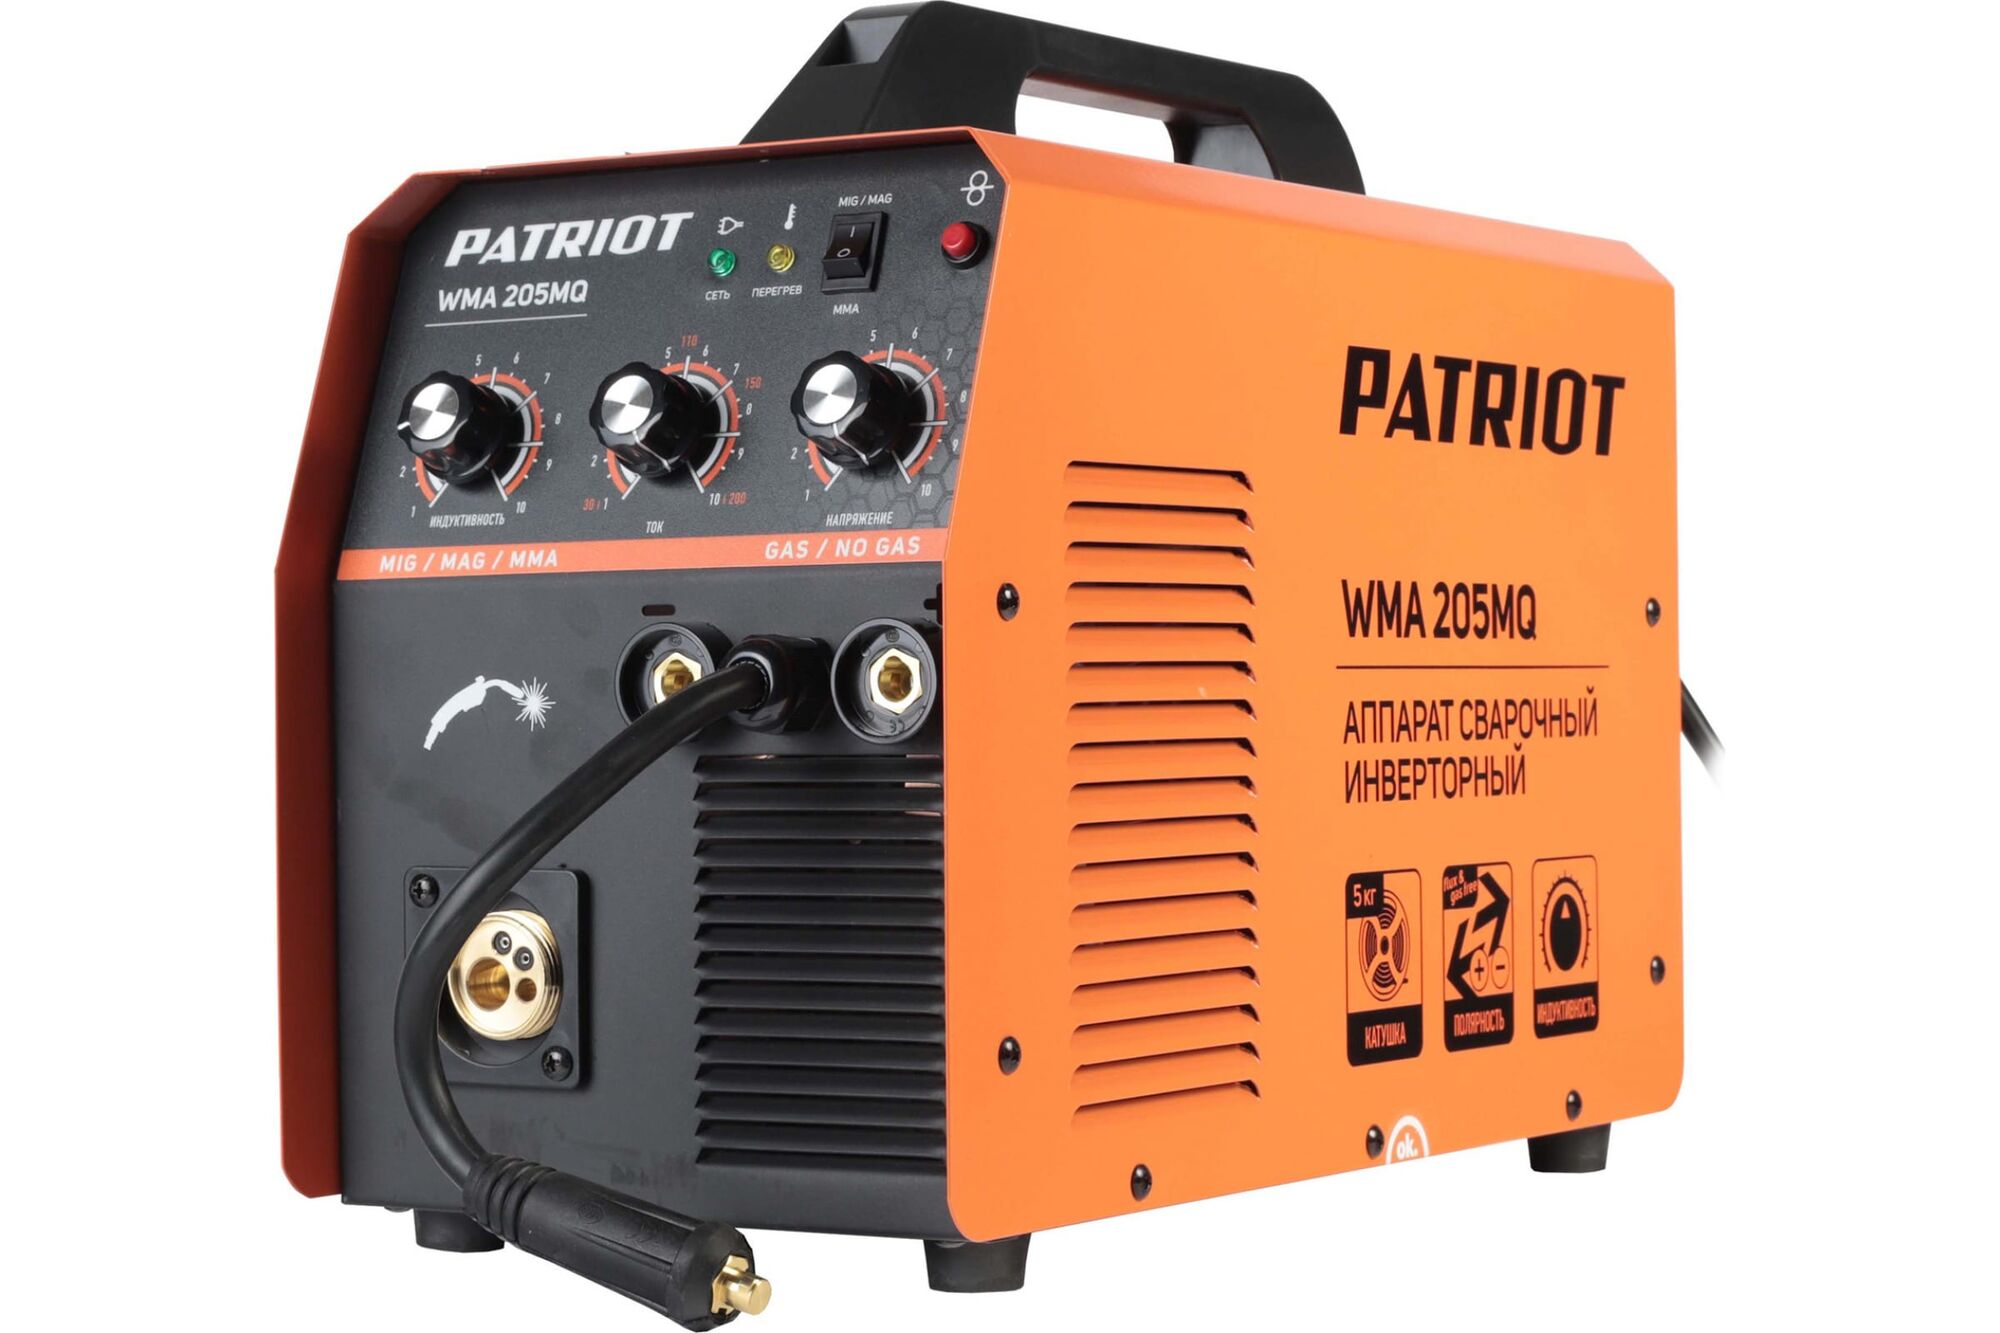 Сварочный инверторный полуавтомат PATRIOT WMA 205MQ MIG/MAG/MMA, полуавтоматическая сварка в среде 605302155 Patriot